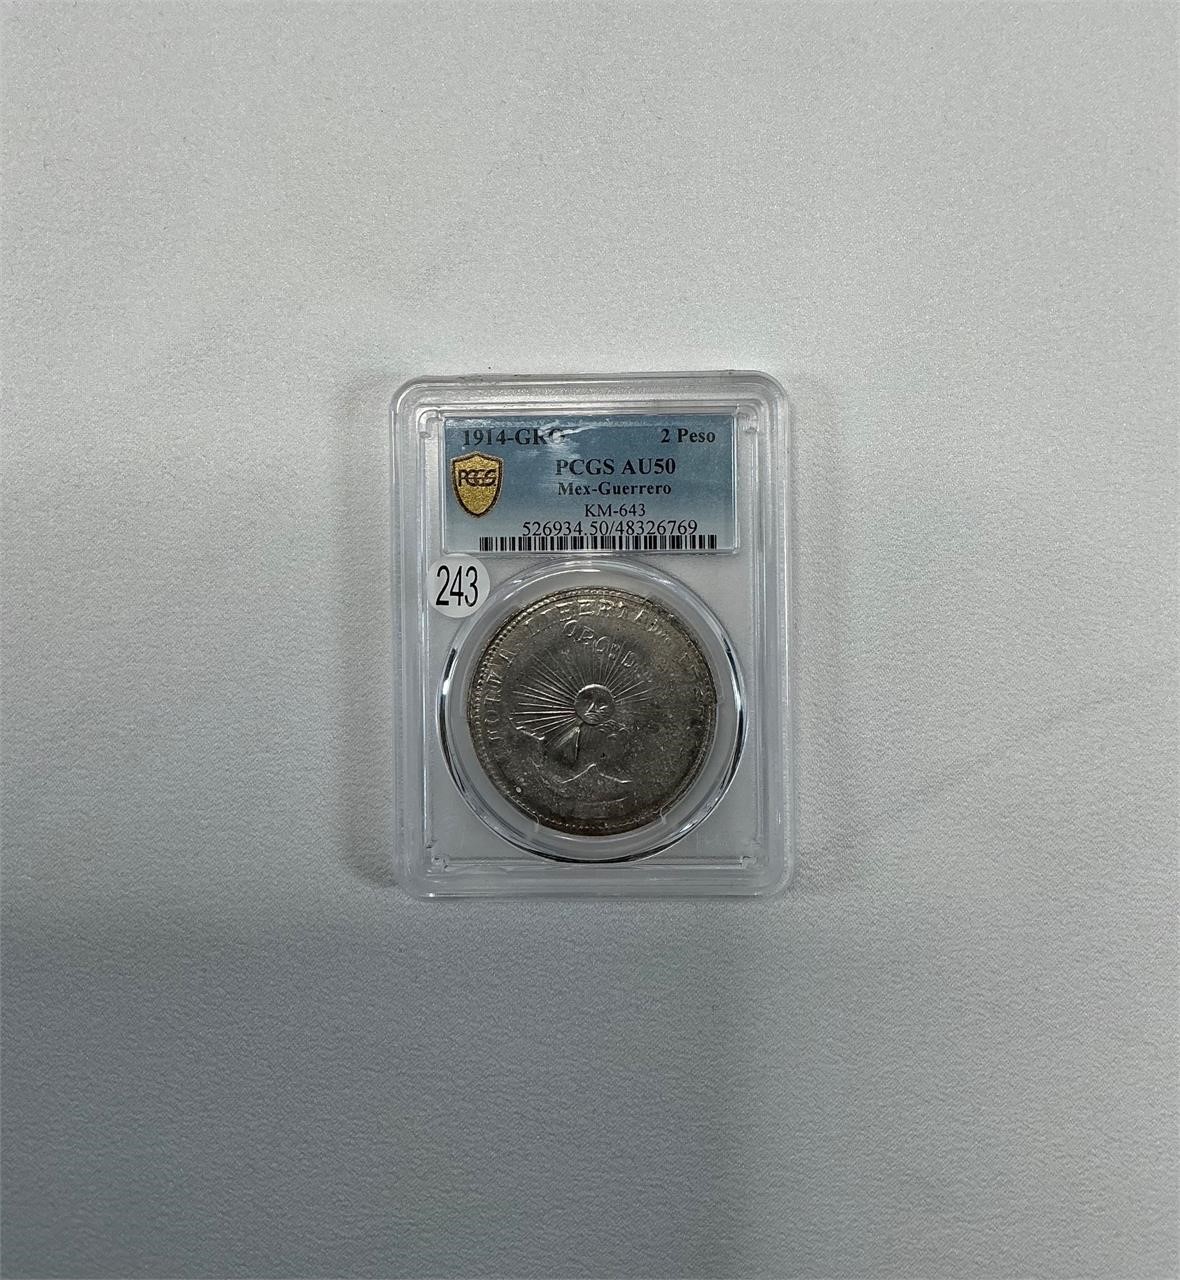 1914 Guerrero 2 Pesos Silver/Gold